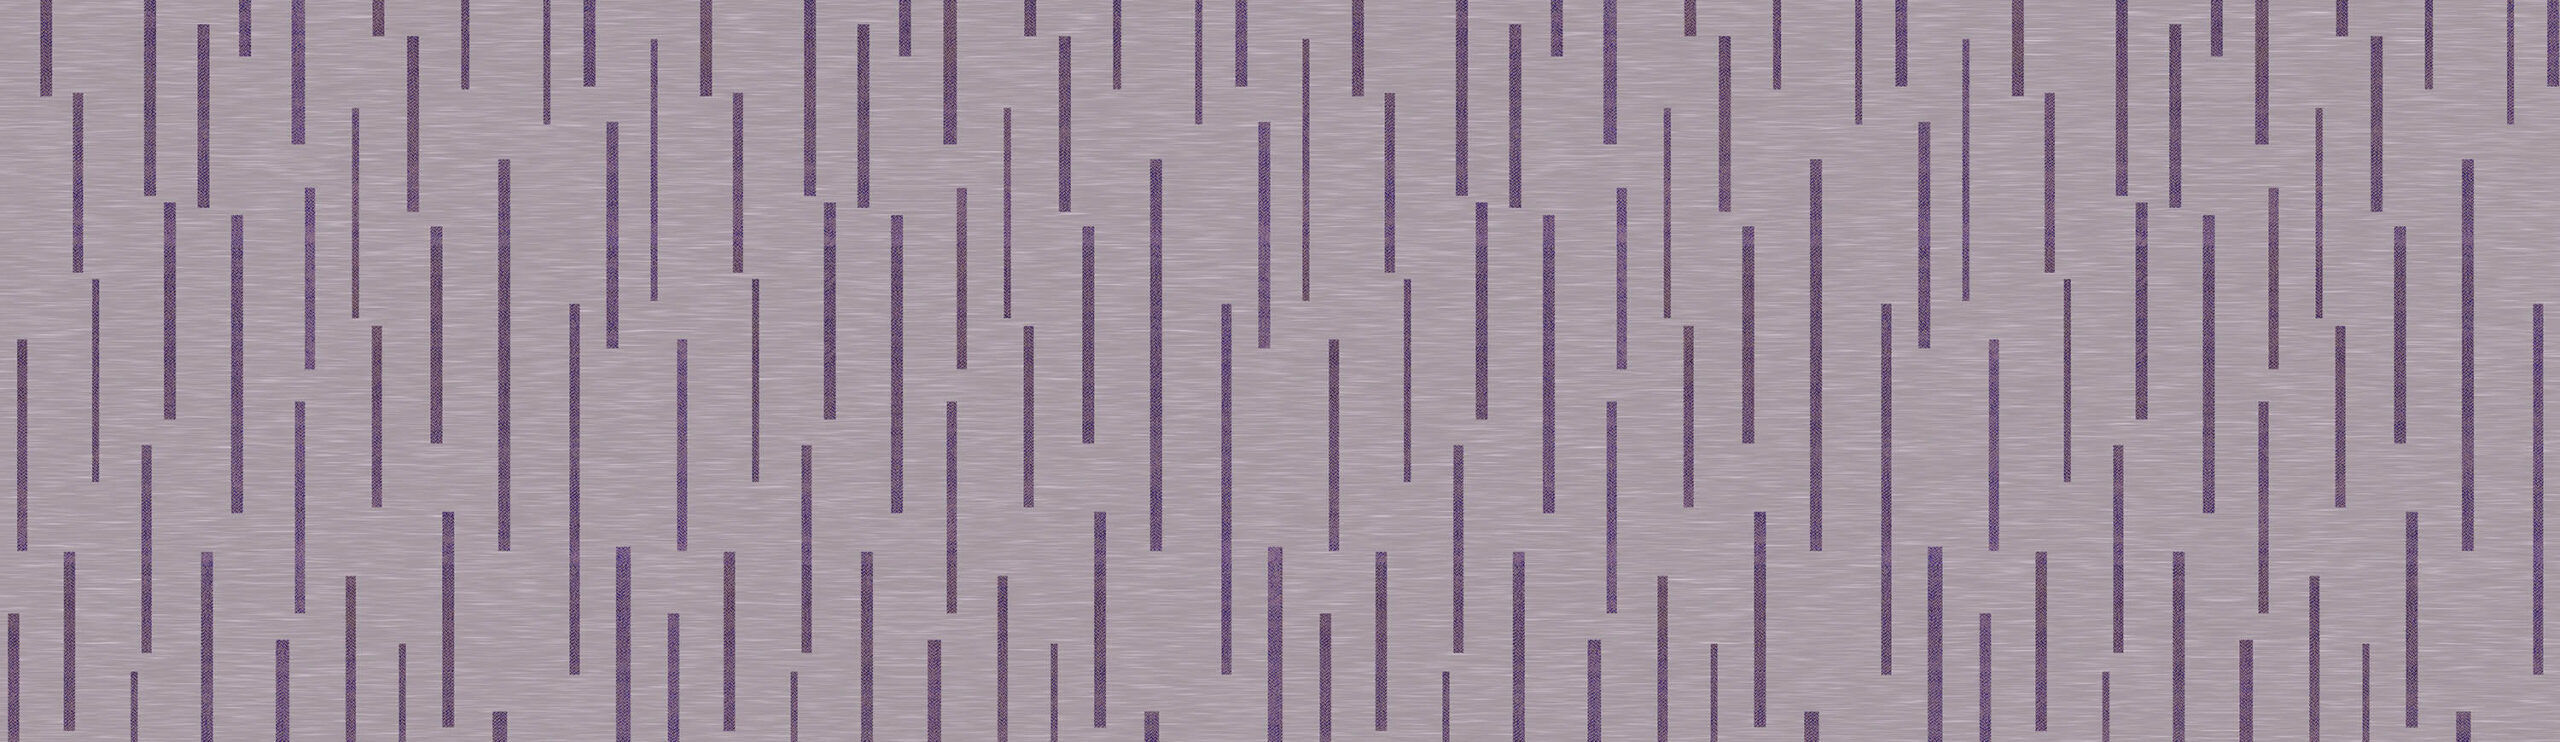 Decorative Lined Texture Border Wallpaper